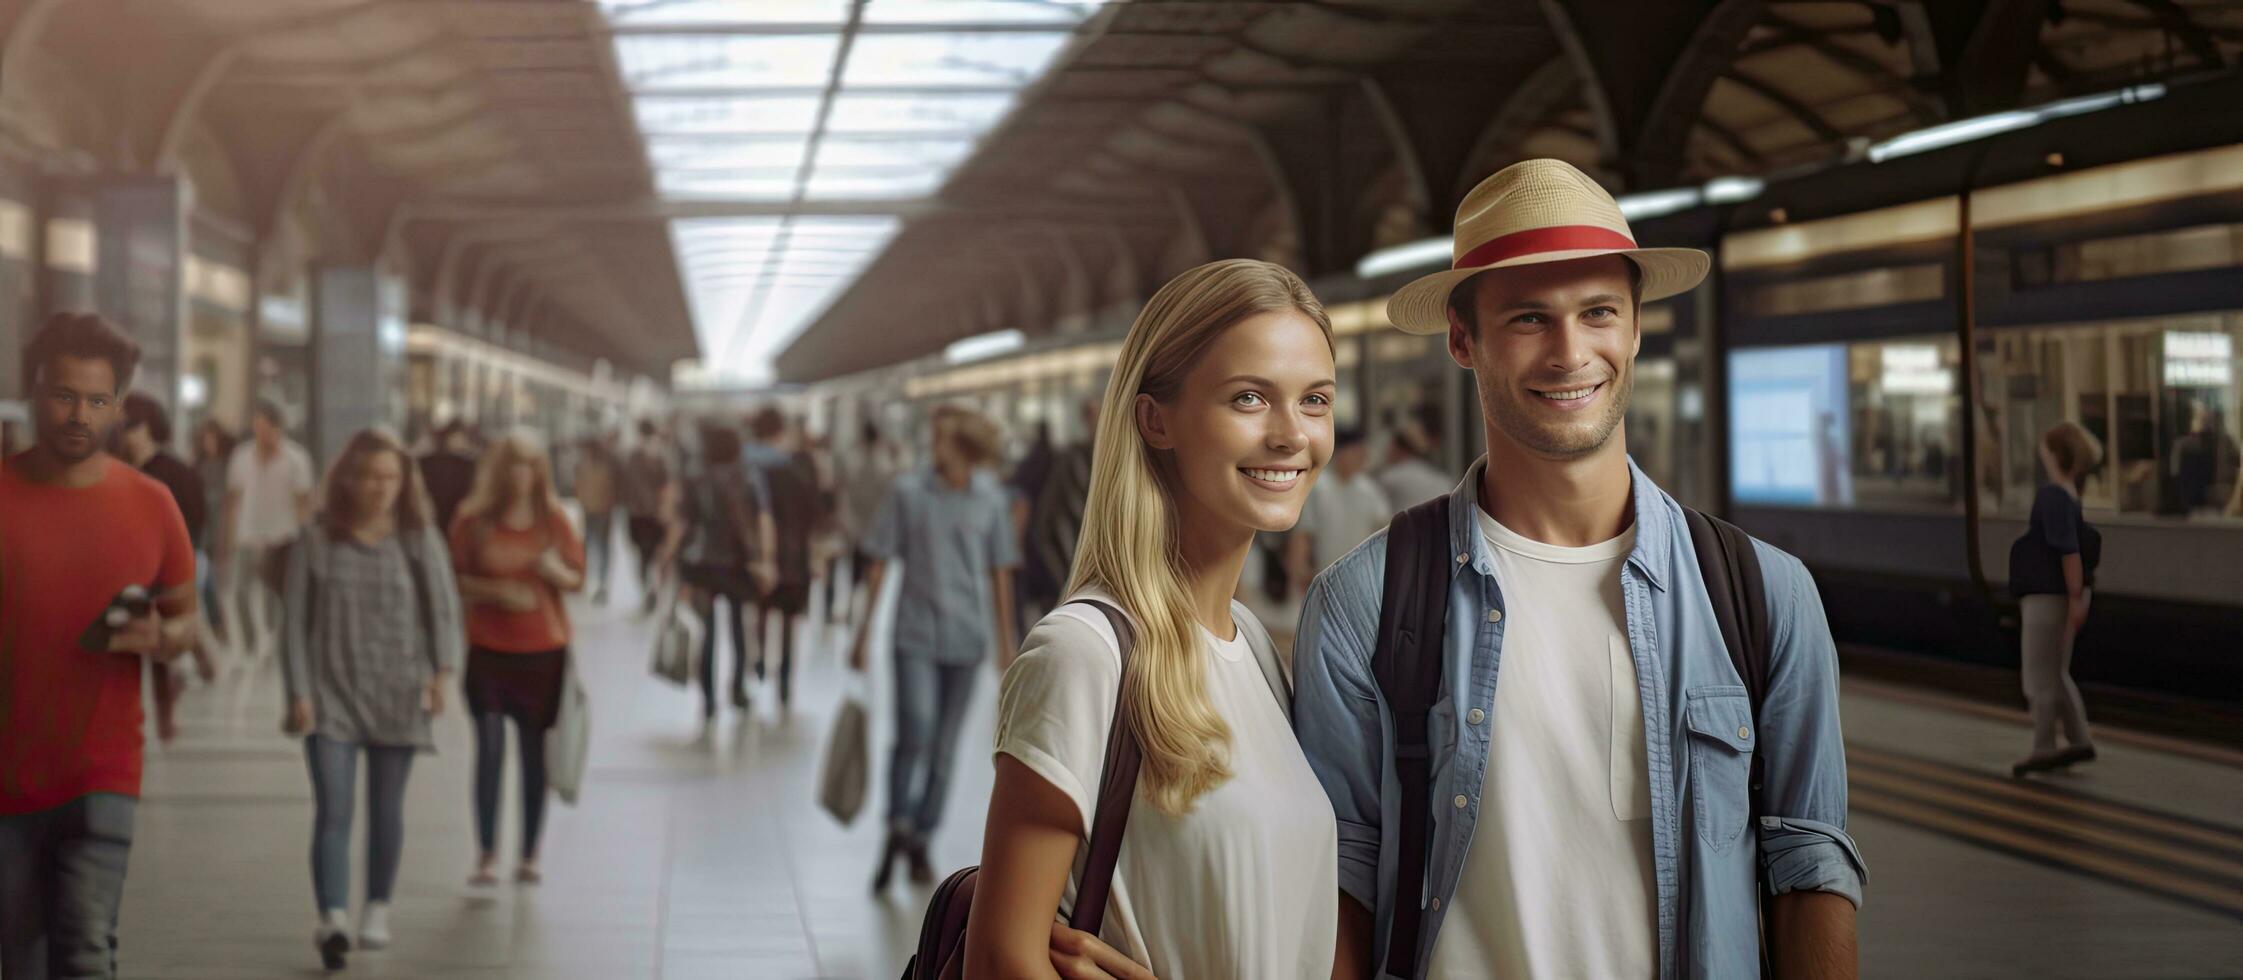 turistas son emocionado esperando para su viaje en el tren estación foto